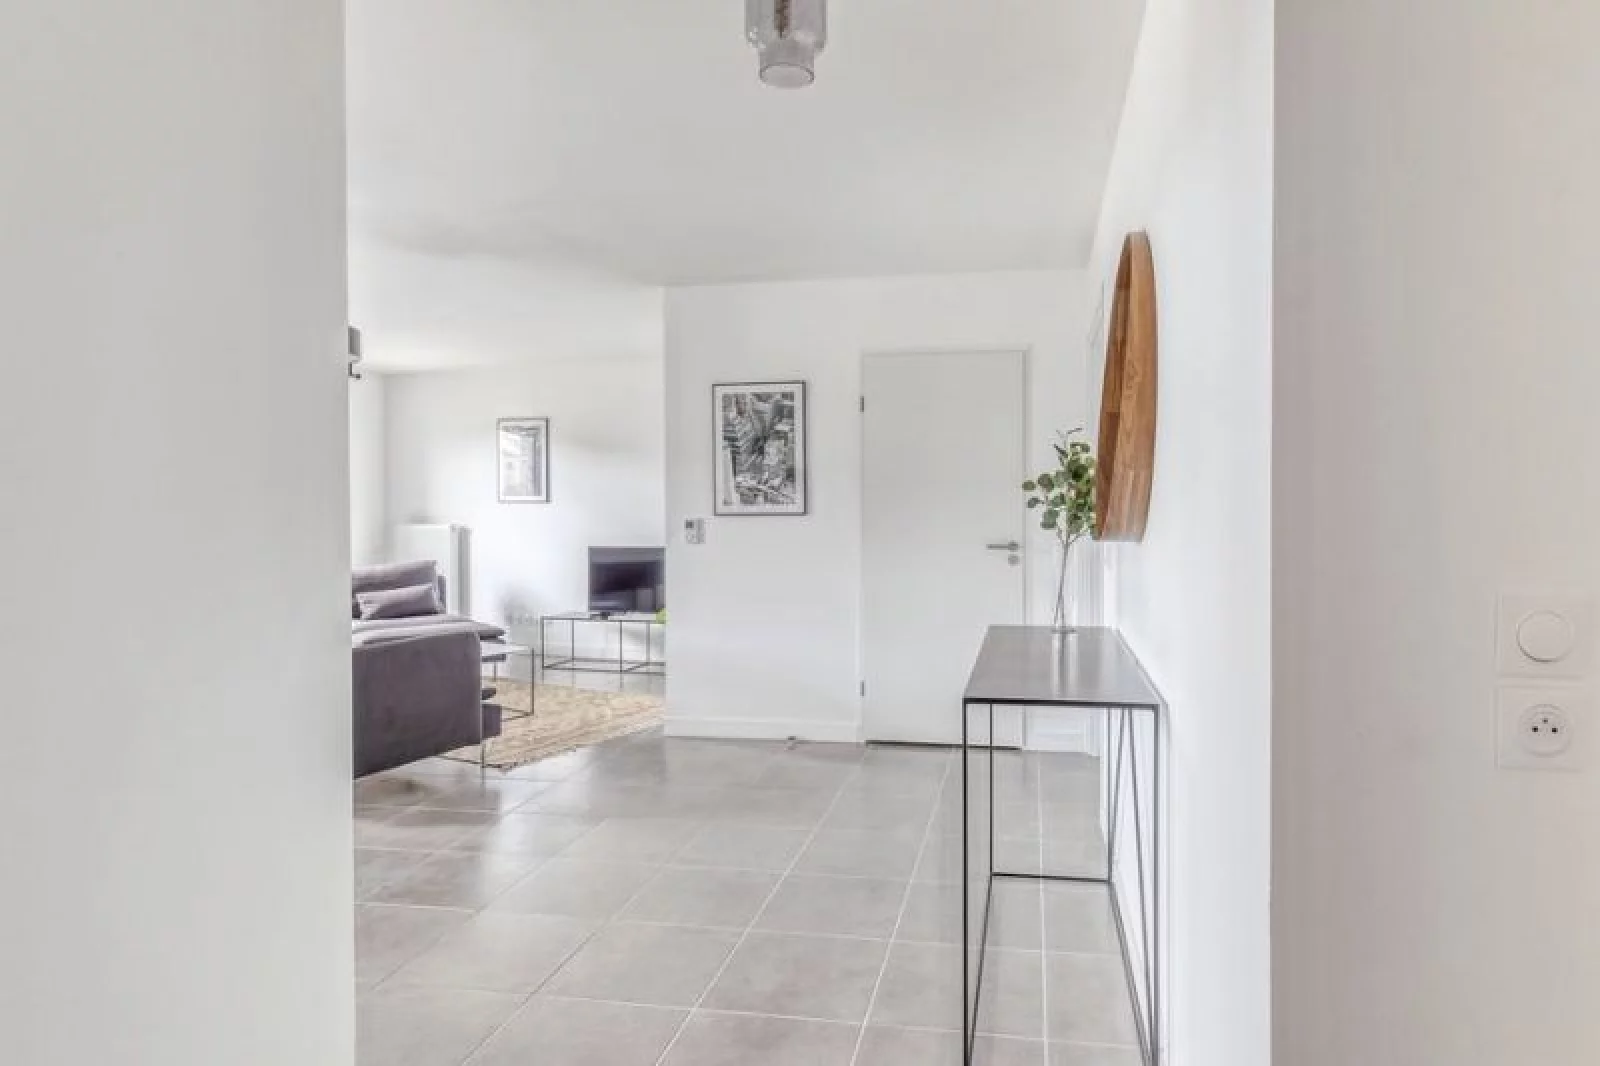 Location appartement meublé 4 pièces 93m²  (Bordeaux - Bacalan)